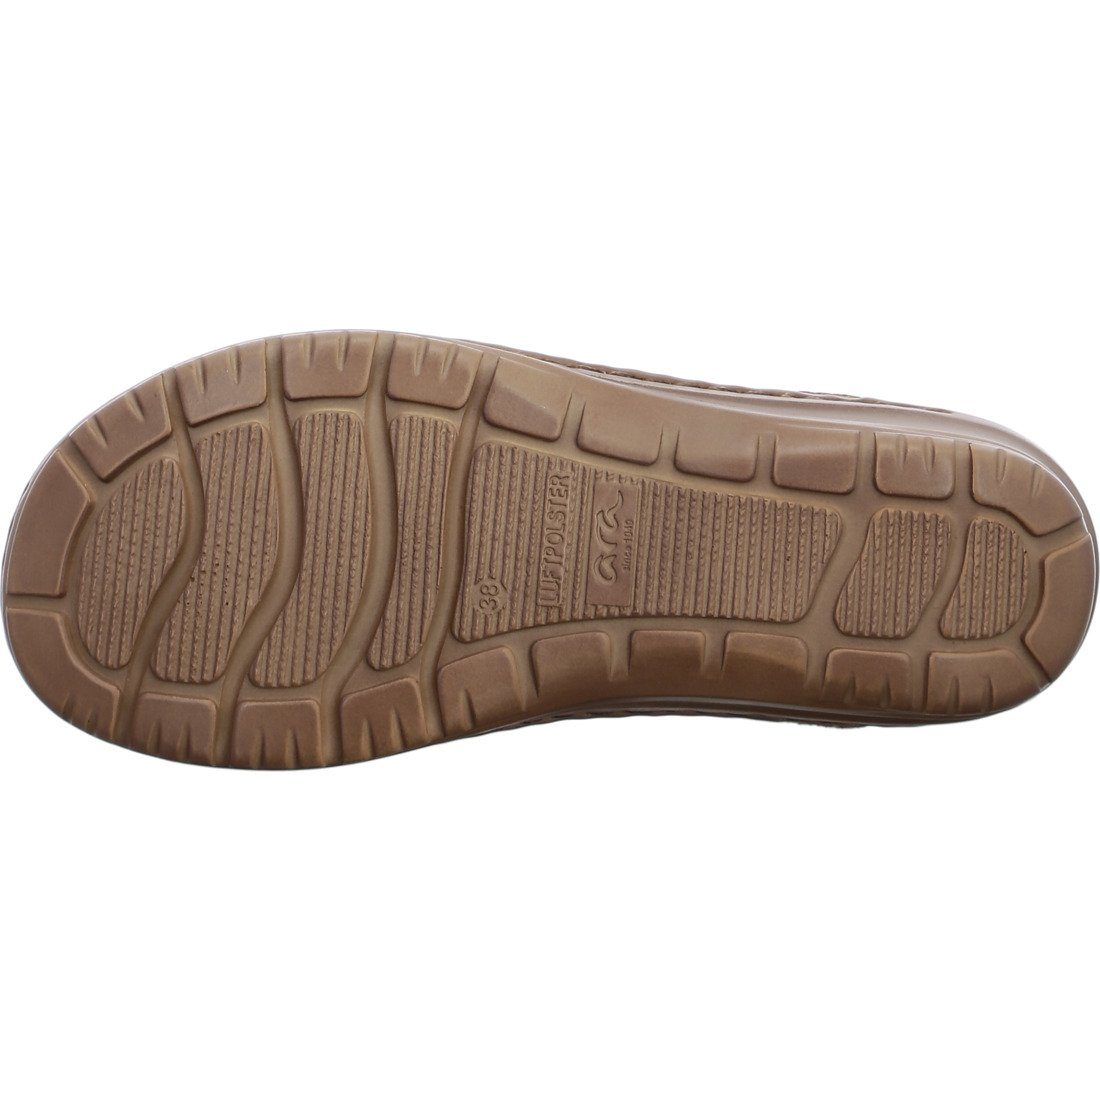 Ara Ara Schuhe, Sandalette Hawaii Leder - Damen 045319 Sandalette rot